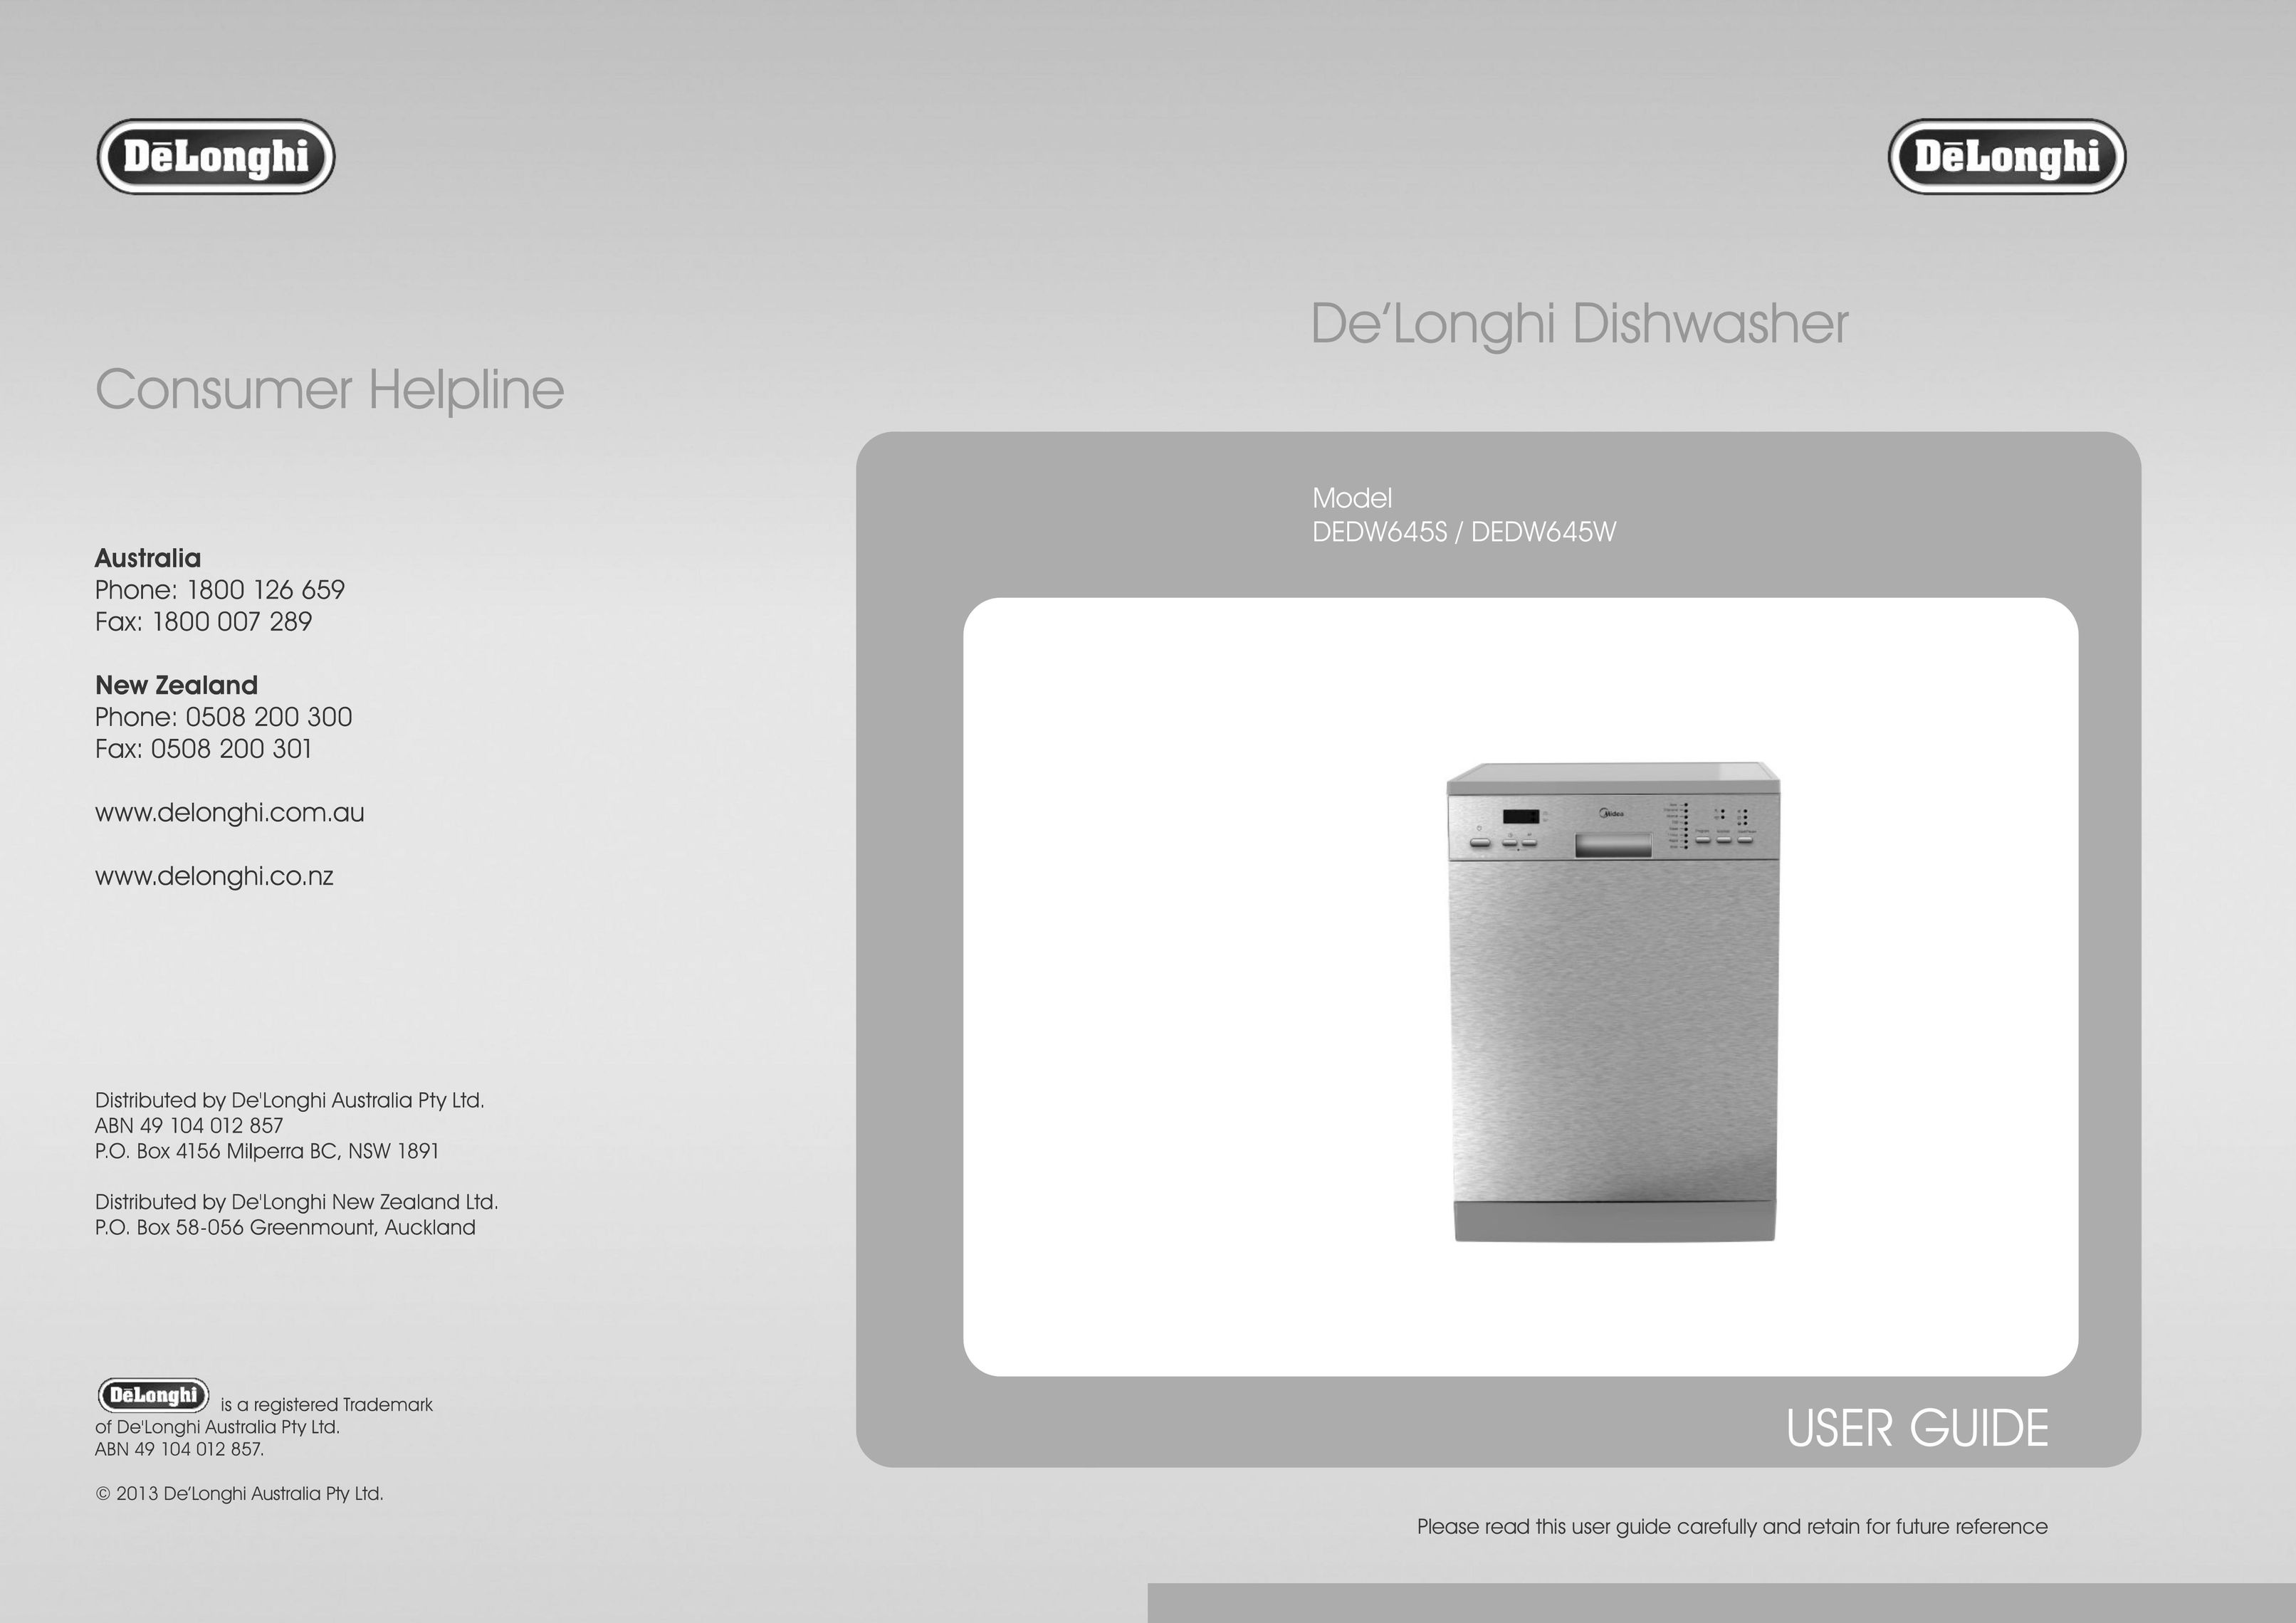 DeLonghi DEDW645W Dishwasher User Manual